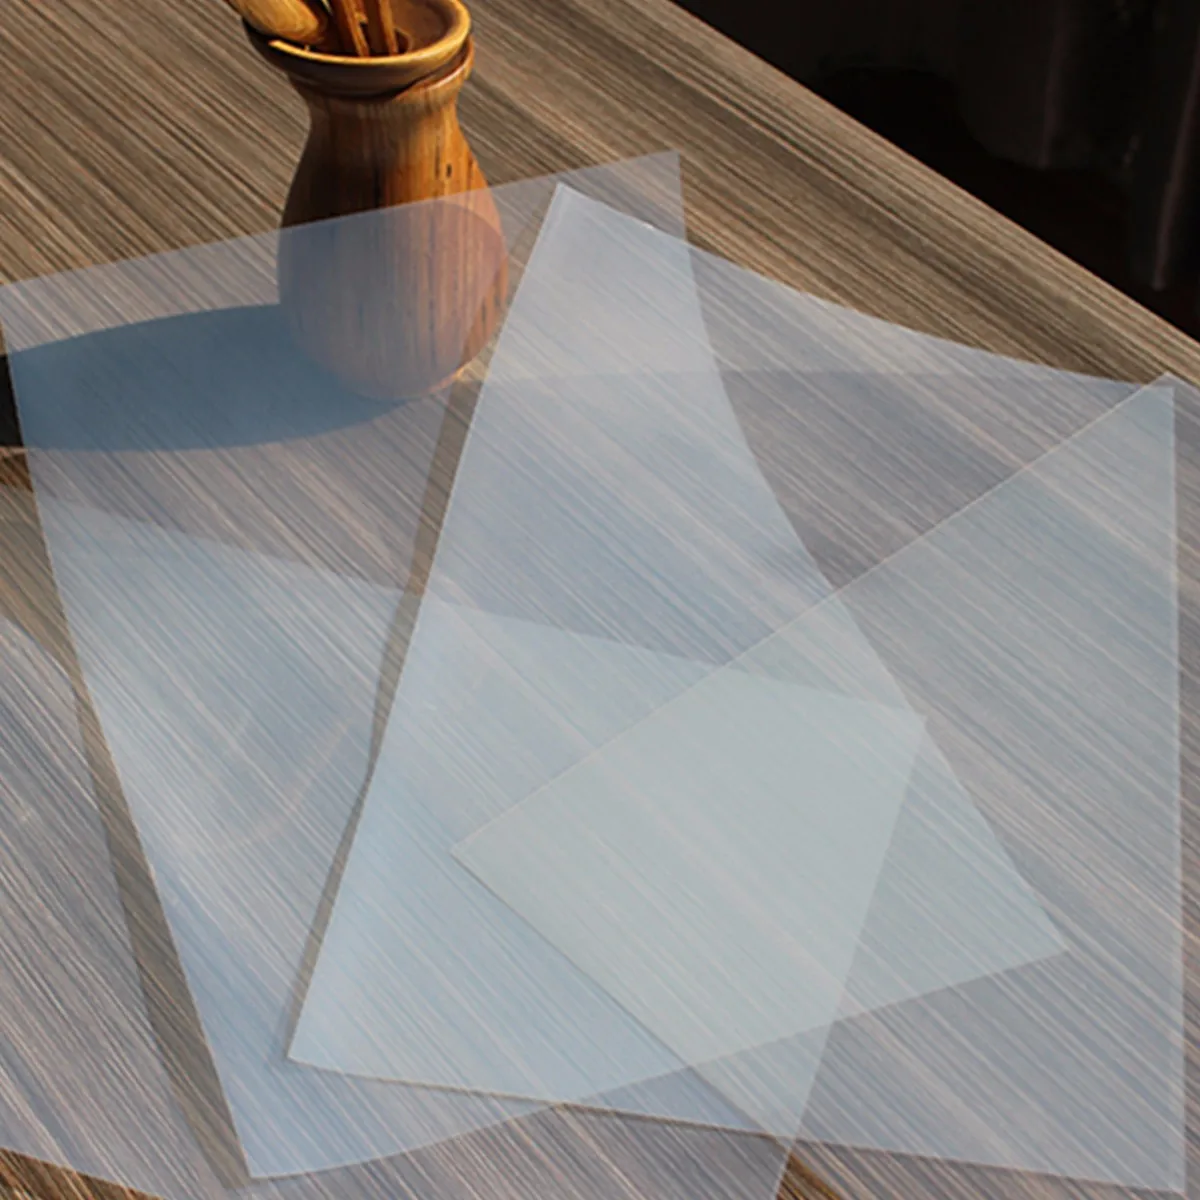 20 листов трафаретной печати прозрачность струйной пленки бумага PCB шаблон для печати дизайн струйной пленки сохраняет толщину чернил 0,12 мм